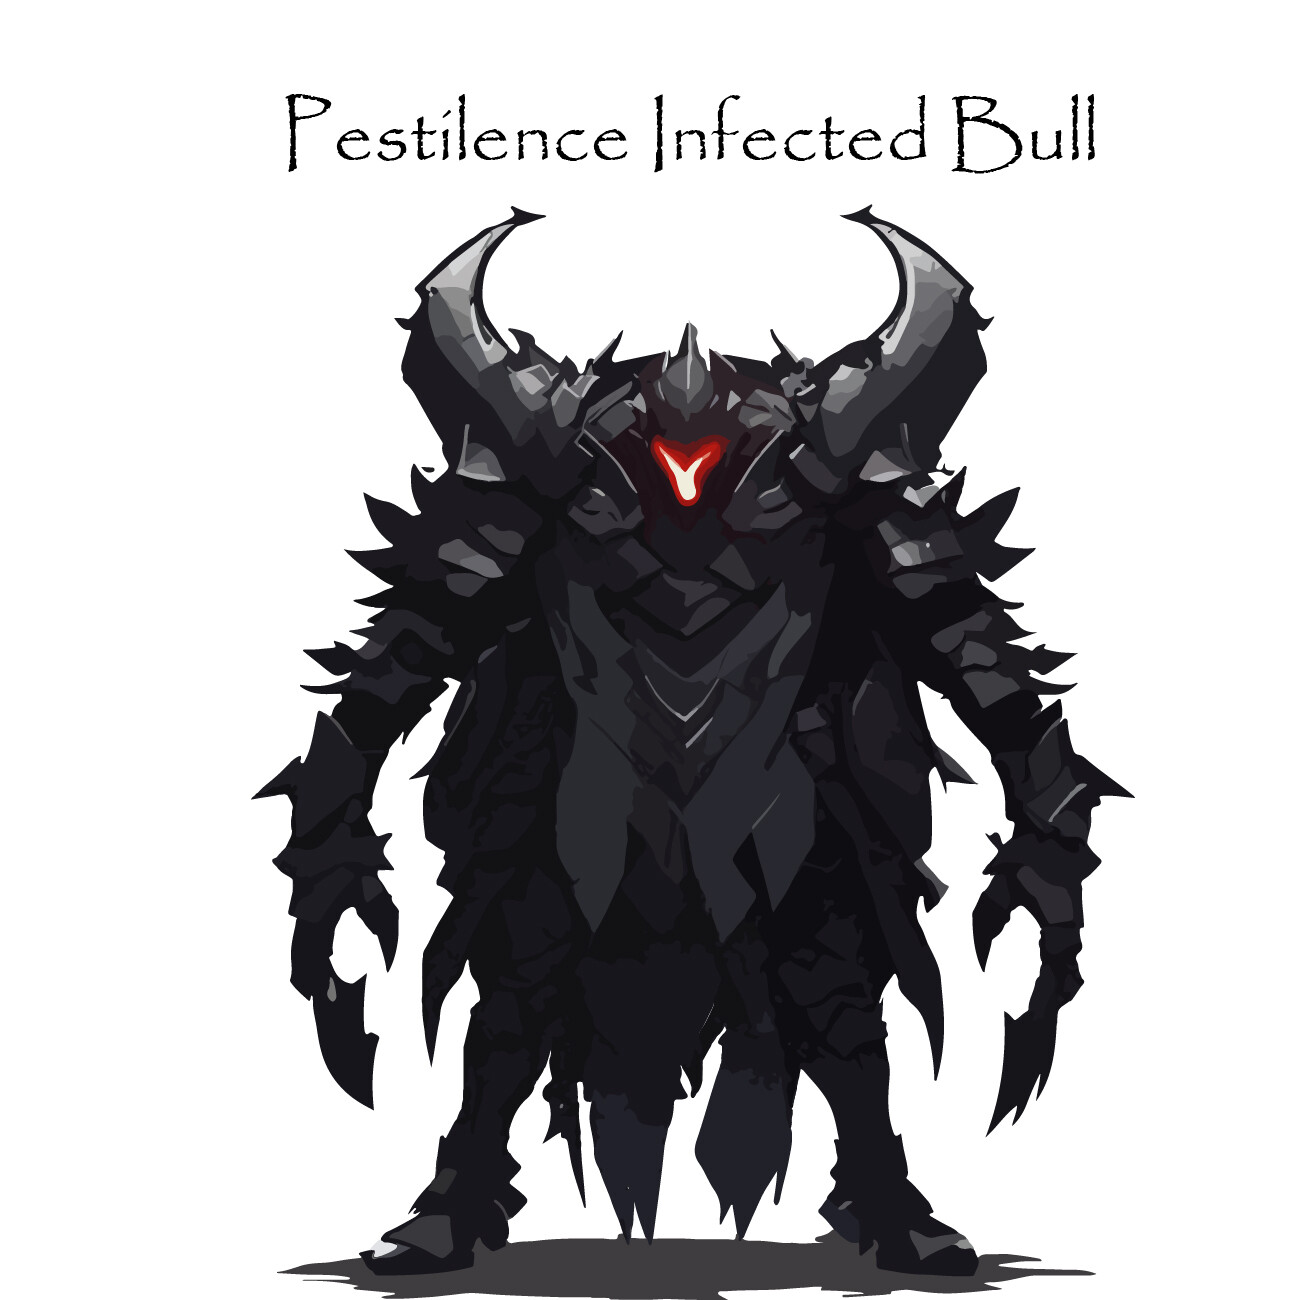 ArtStation - Pestilence Infected Bull - Exodus Horrors